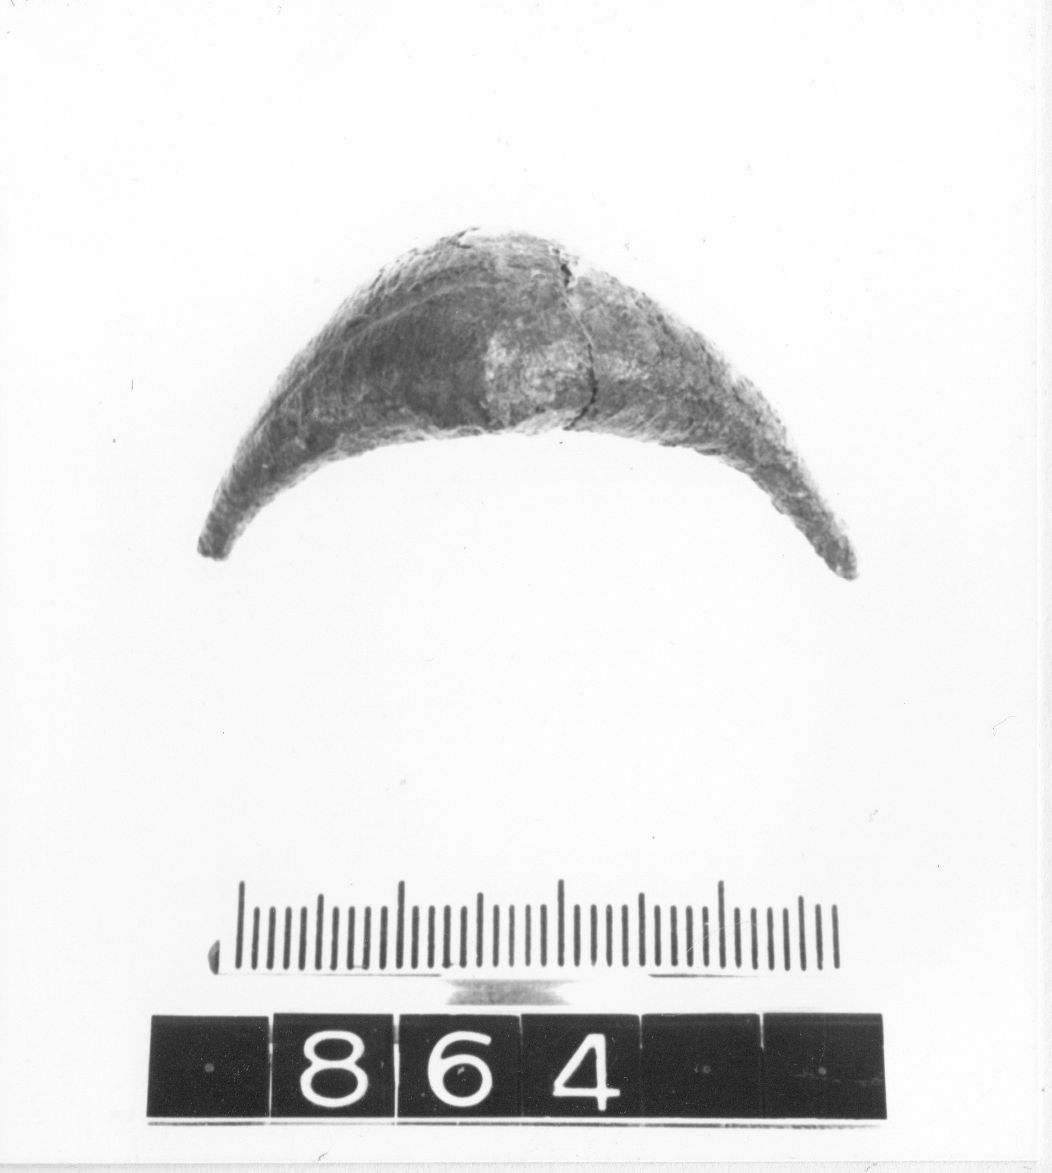 fibula, ad arco romboidale - cultura ligure (fine/ primo quarto VIII-VII a.C)